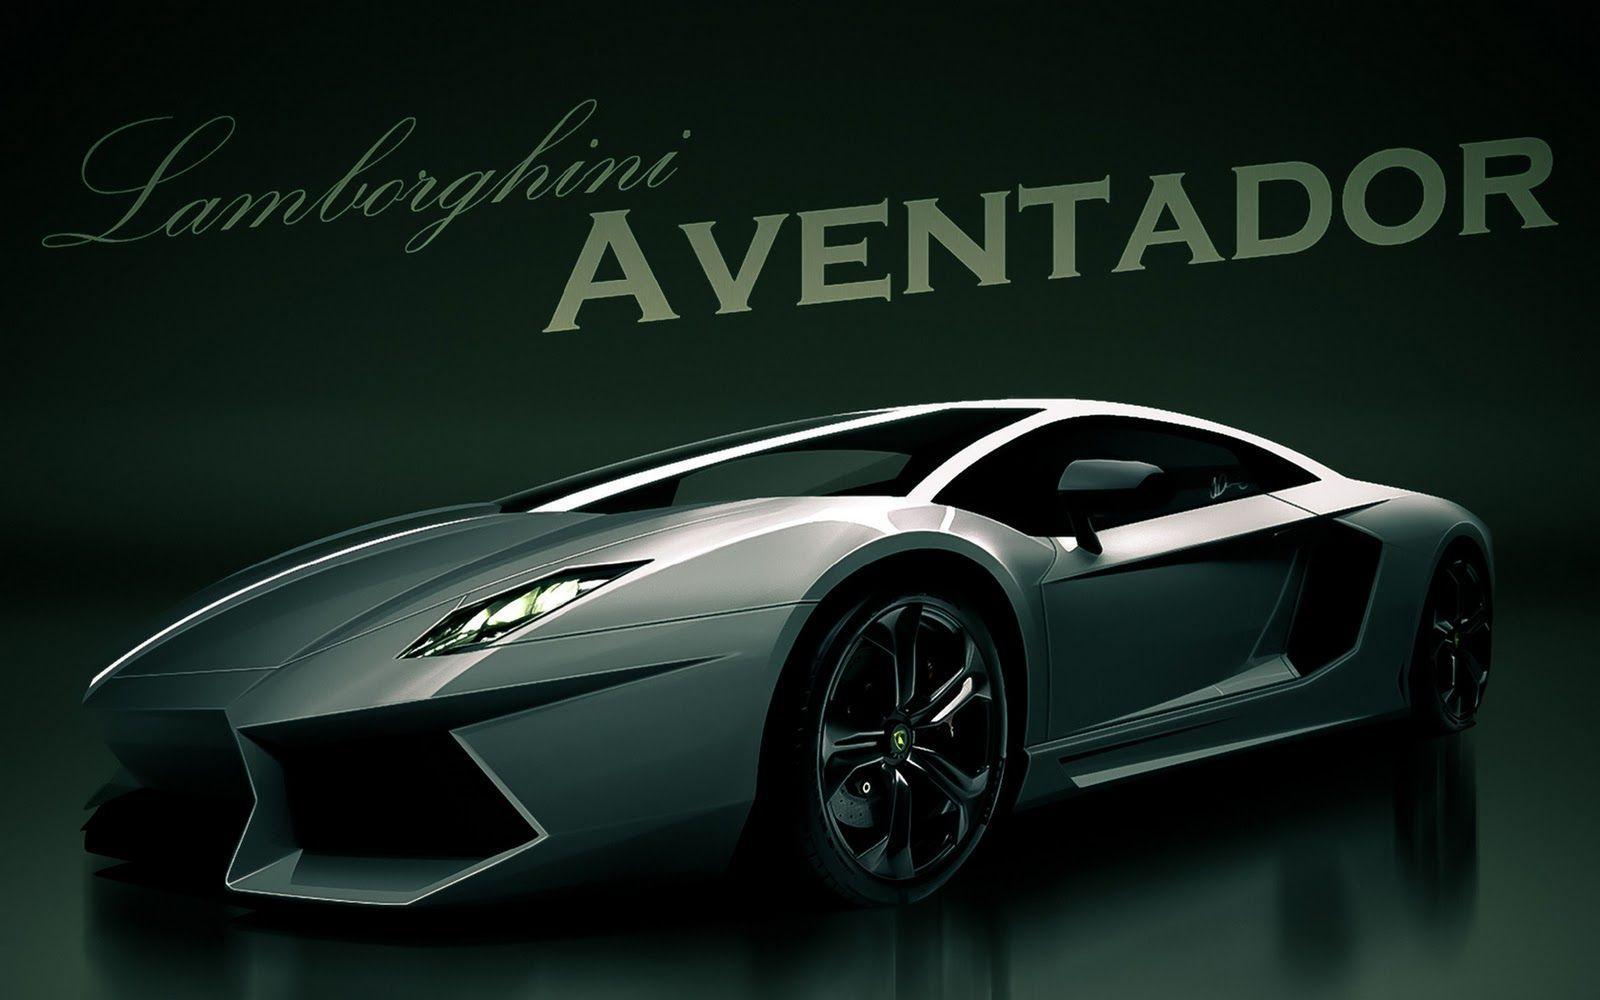 HD Wallpaper Widescreen 1080P 3D. Lamborghini Aventador